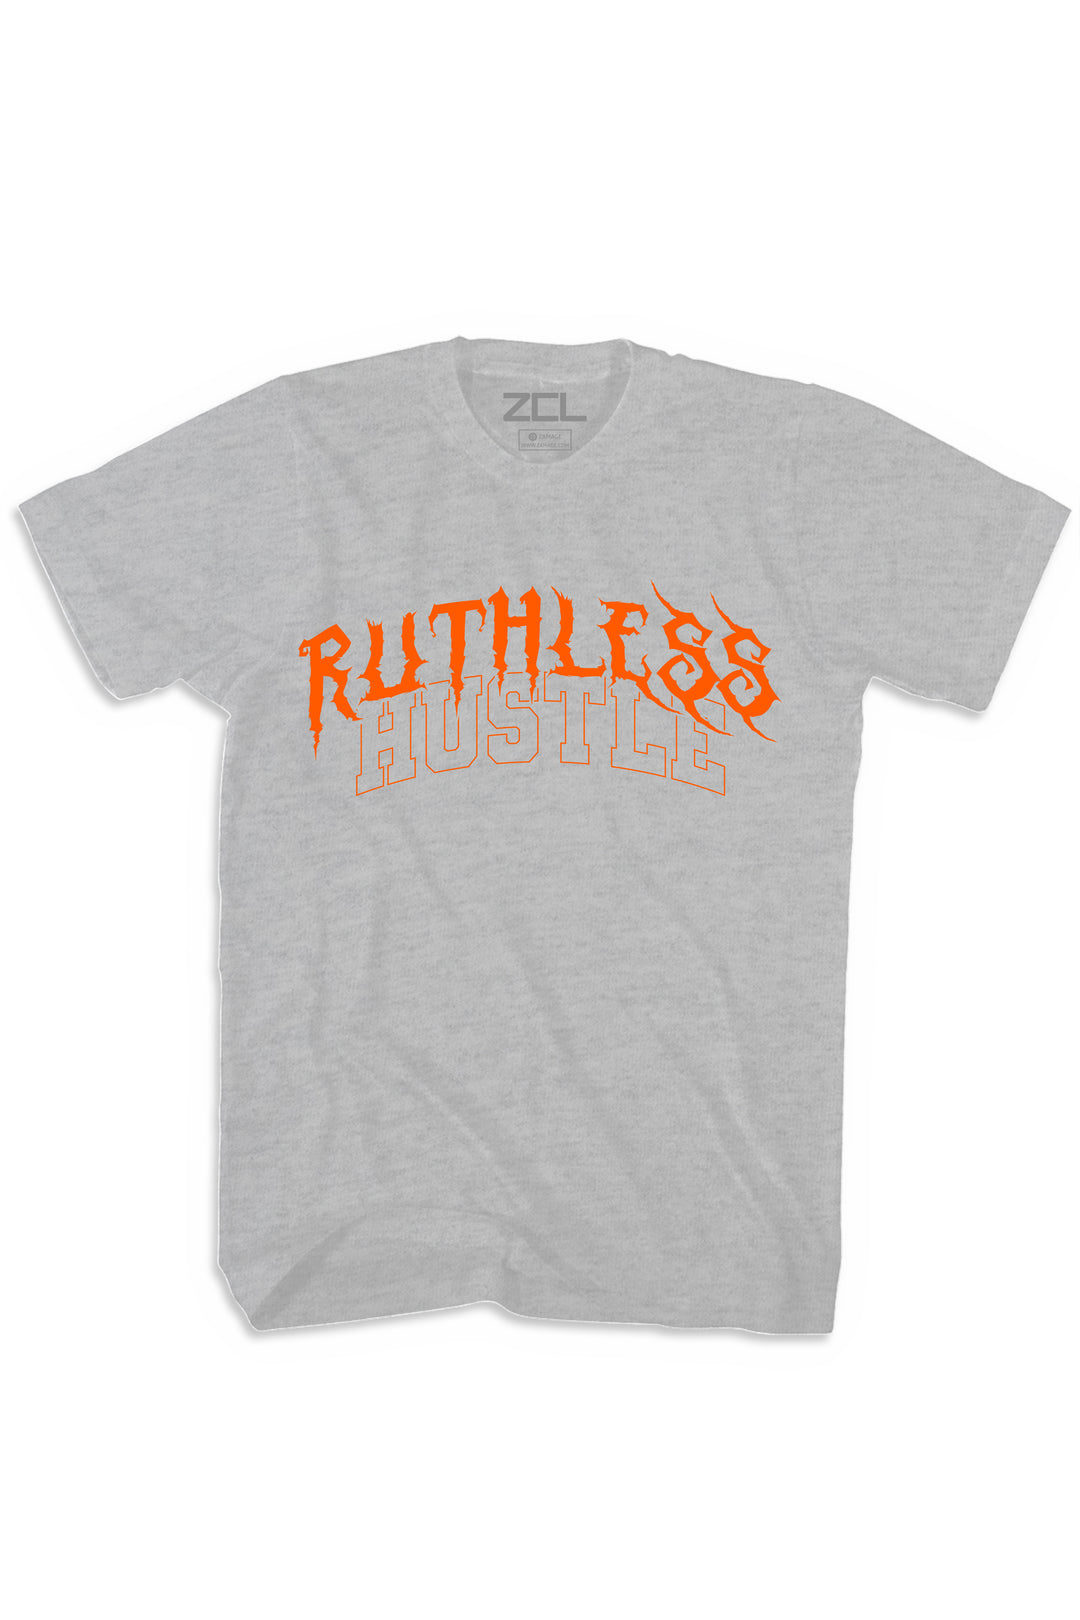 Ruthless Hustle Tee (Orange Logo) - Zamage